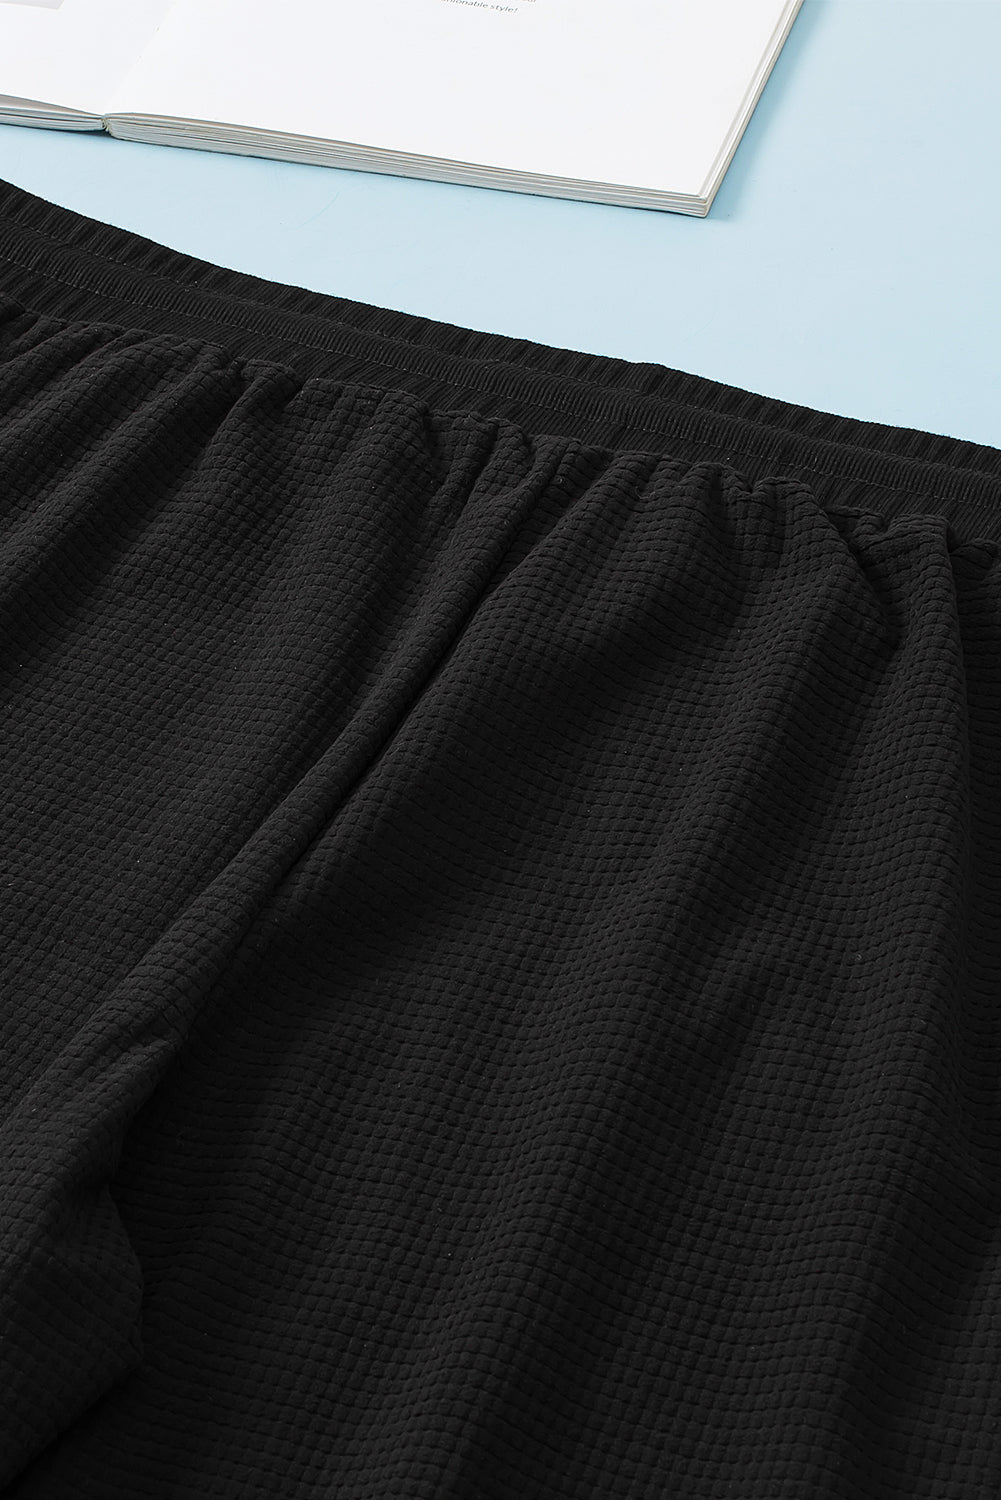 Črne jogger hlače z razkritimi šivi in ​​vrvicami velike velikosti